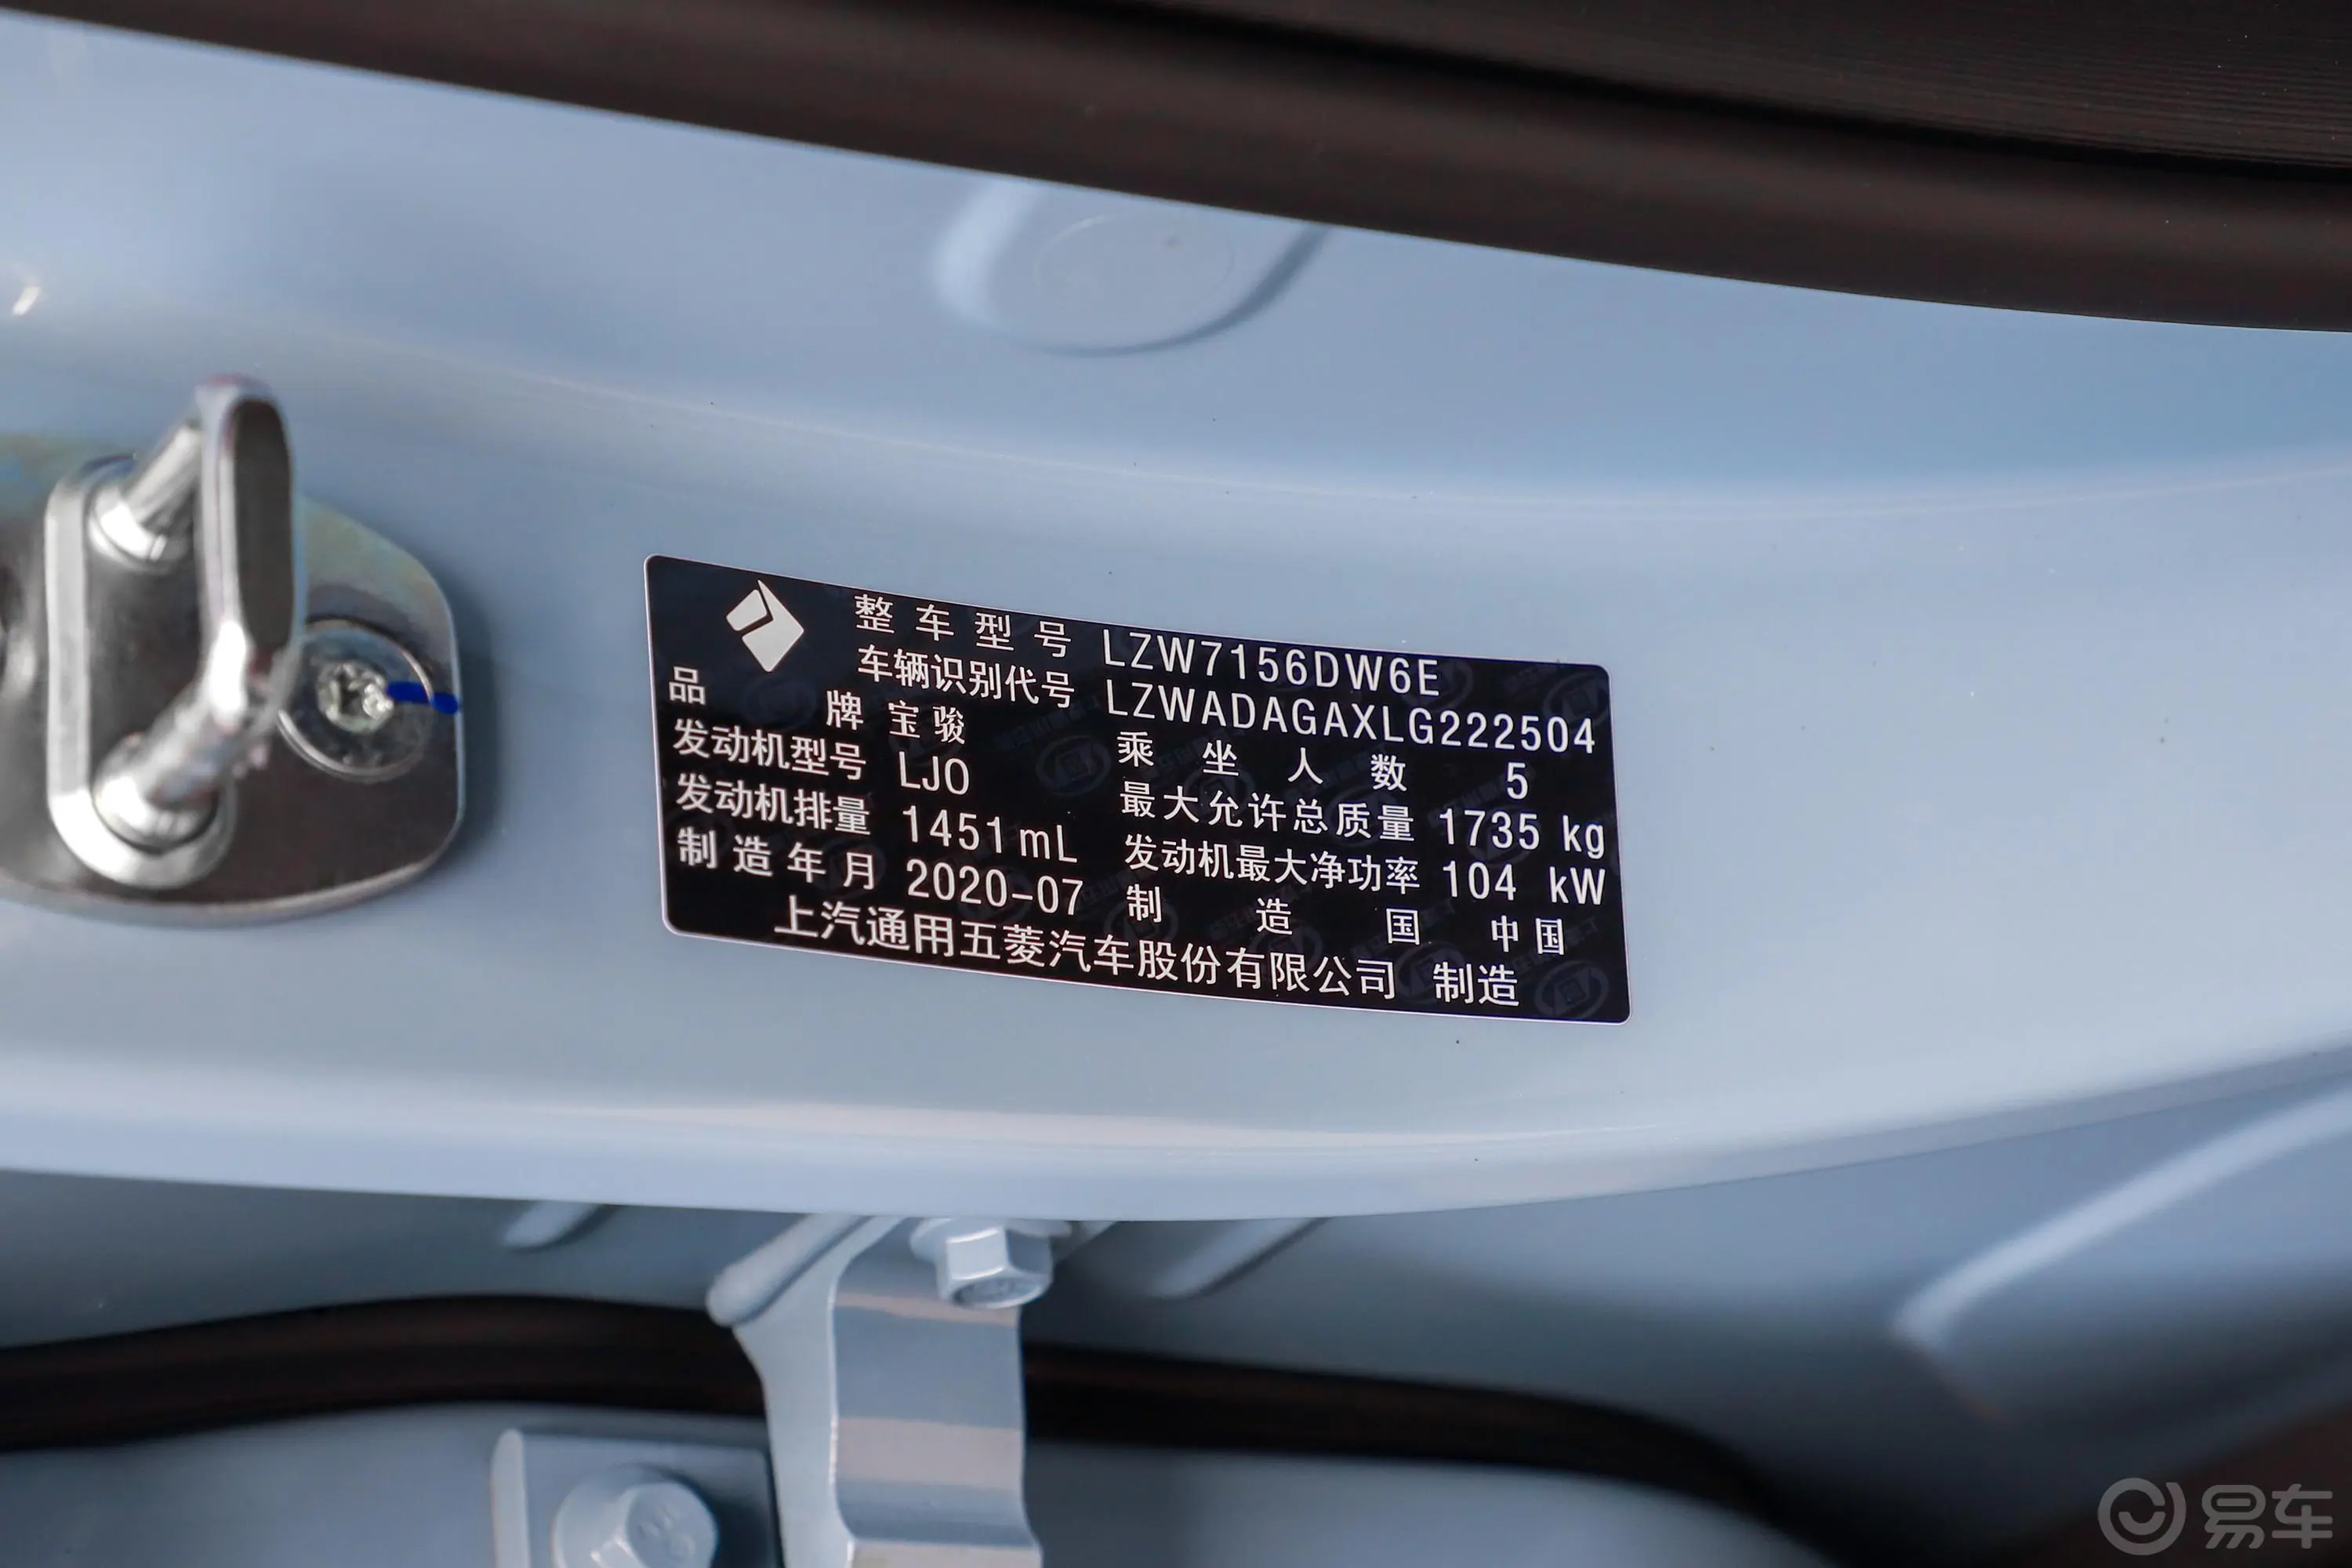 宝骏RS-31.5T CVT 智能尊贵型车辆信息铭牌